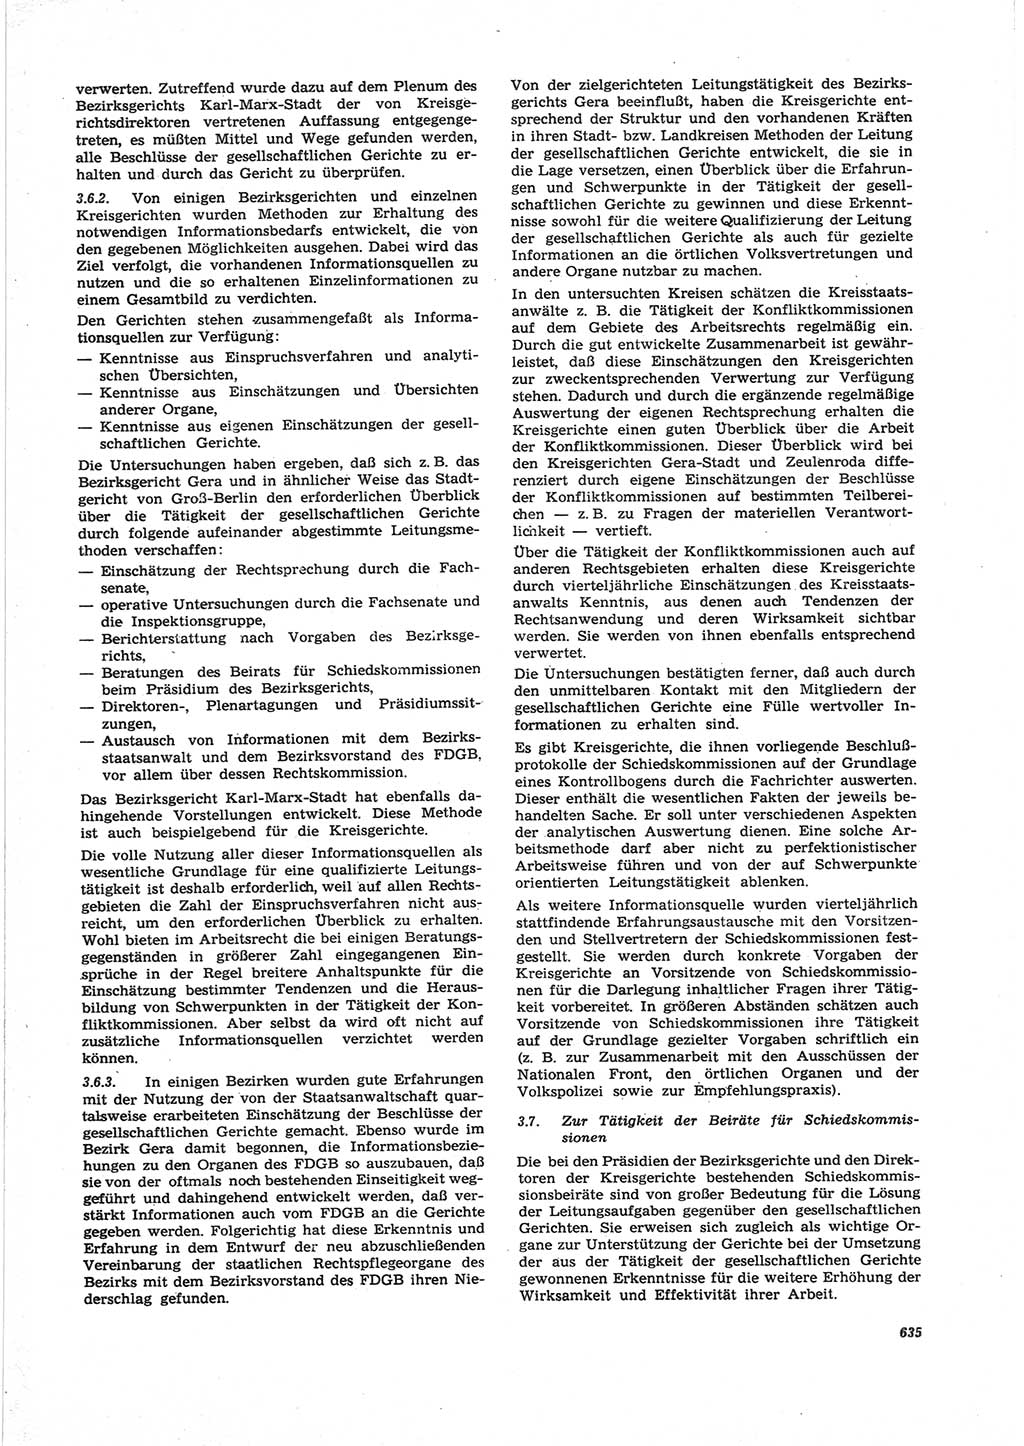 Neue Justiz (NJ), Zeitschrift für Recht und Rechtswissenschaft [Deutsche Demokratische Republik (DDR)], 25. Jahrgang 1971, Seite 635 (NJ DDR 1971, S. 635)